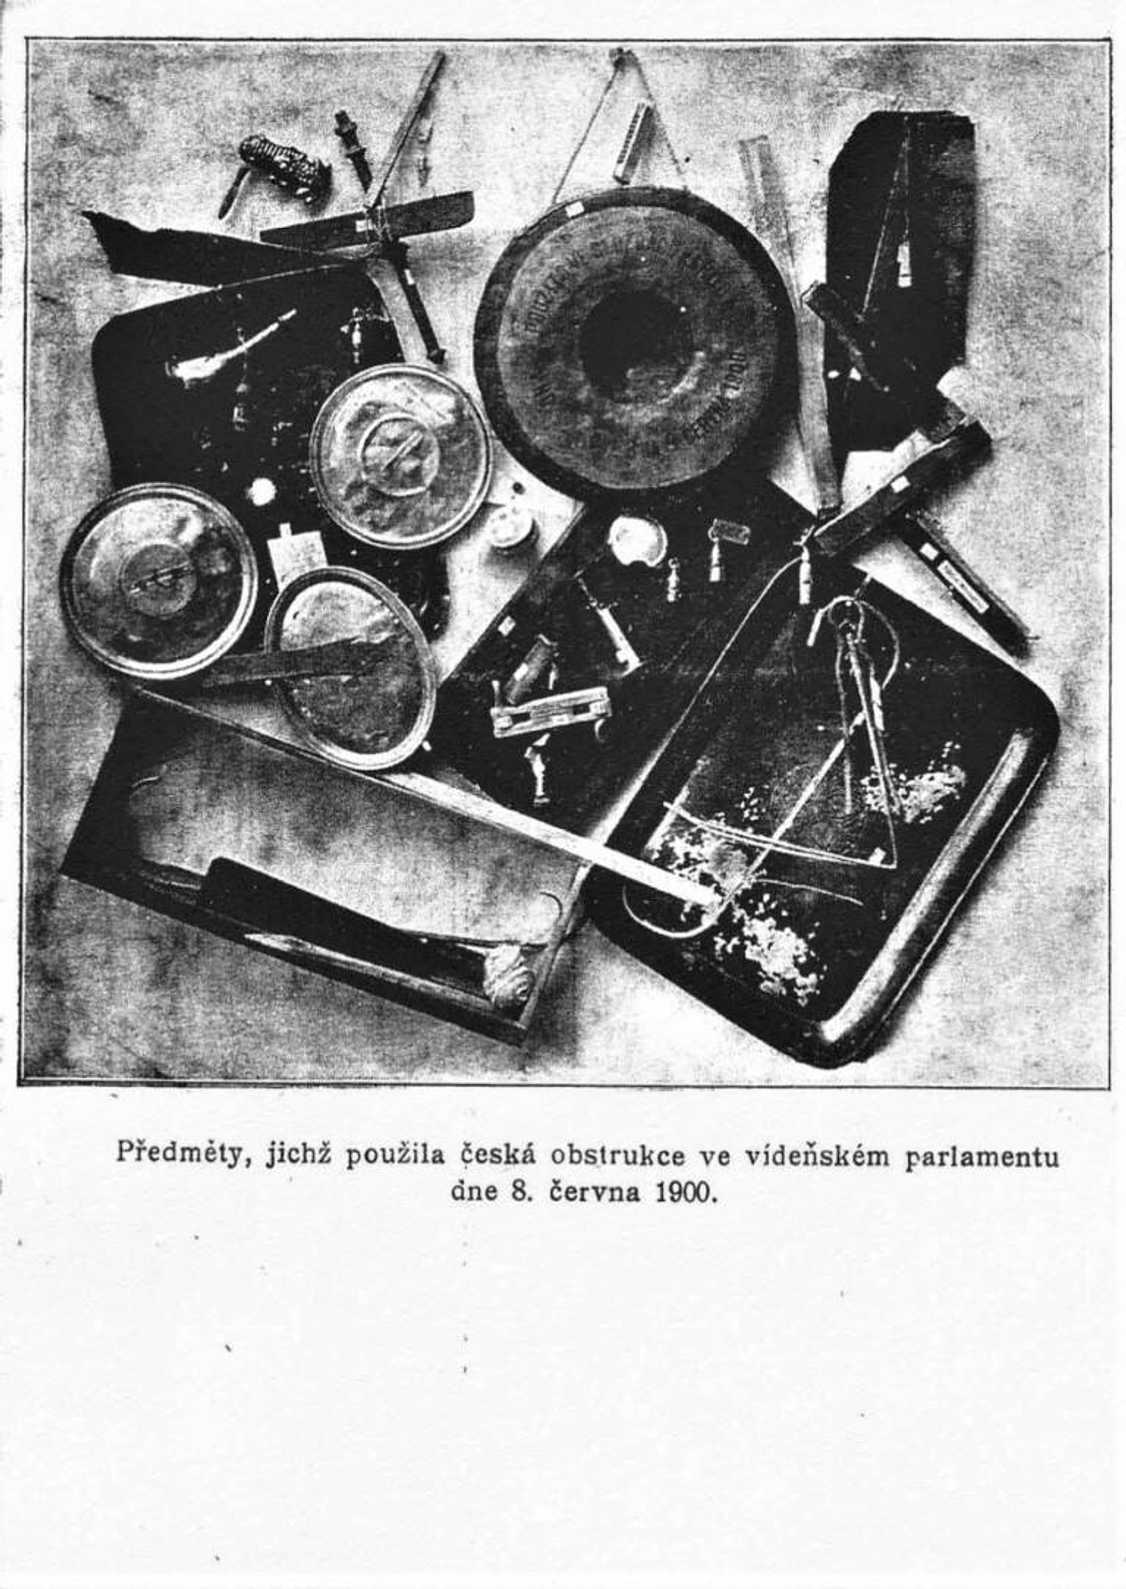 Dobová pohlednice s předměty (puklice, píšťalky, řehtačky apod.), které byly použity při obstrukční noci 8. června 1900.
